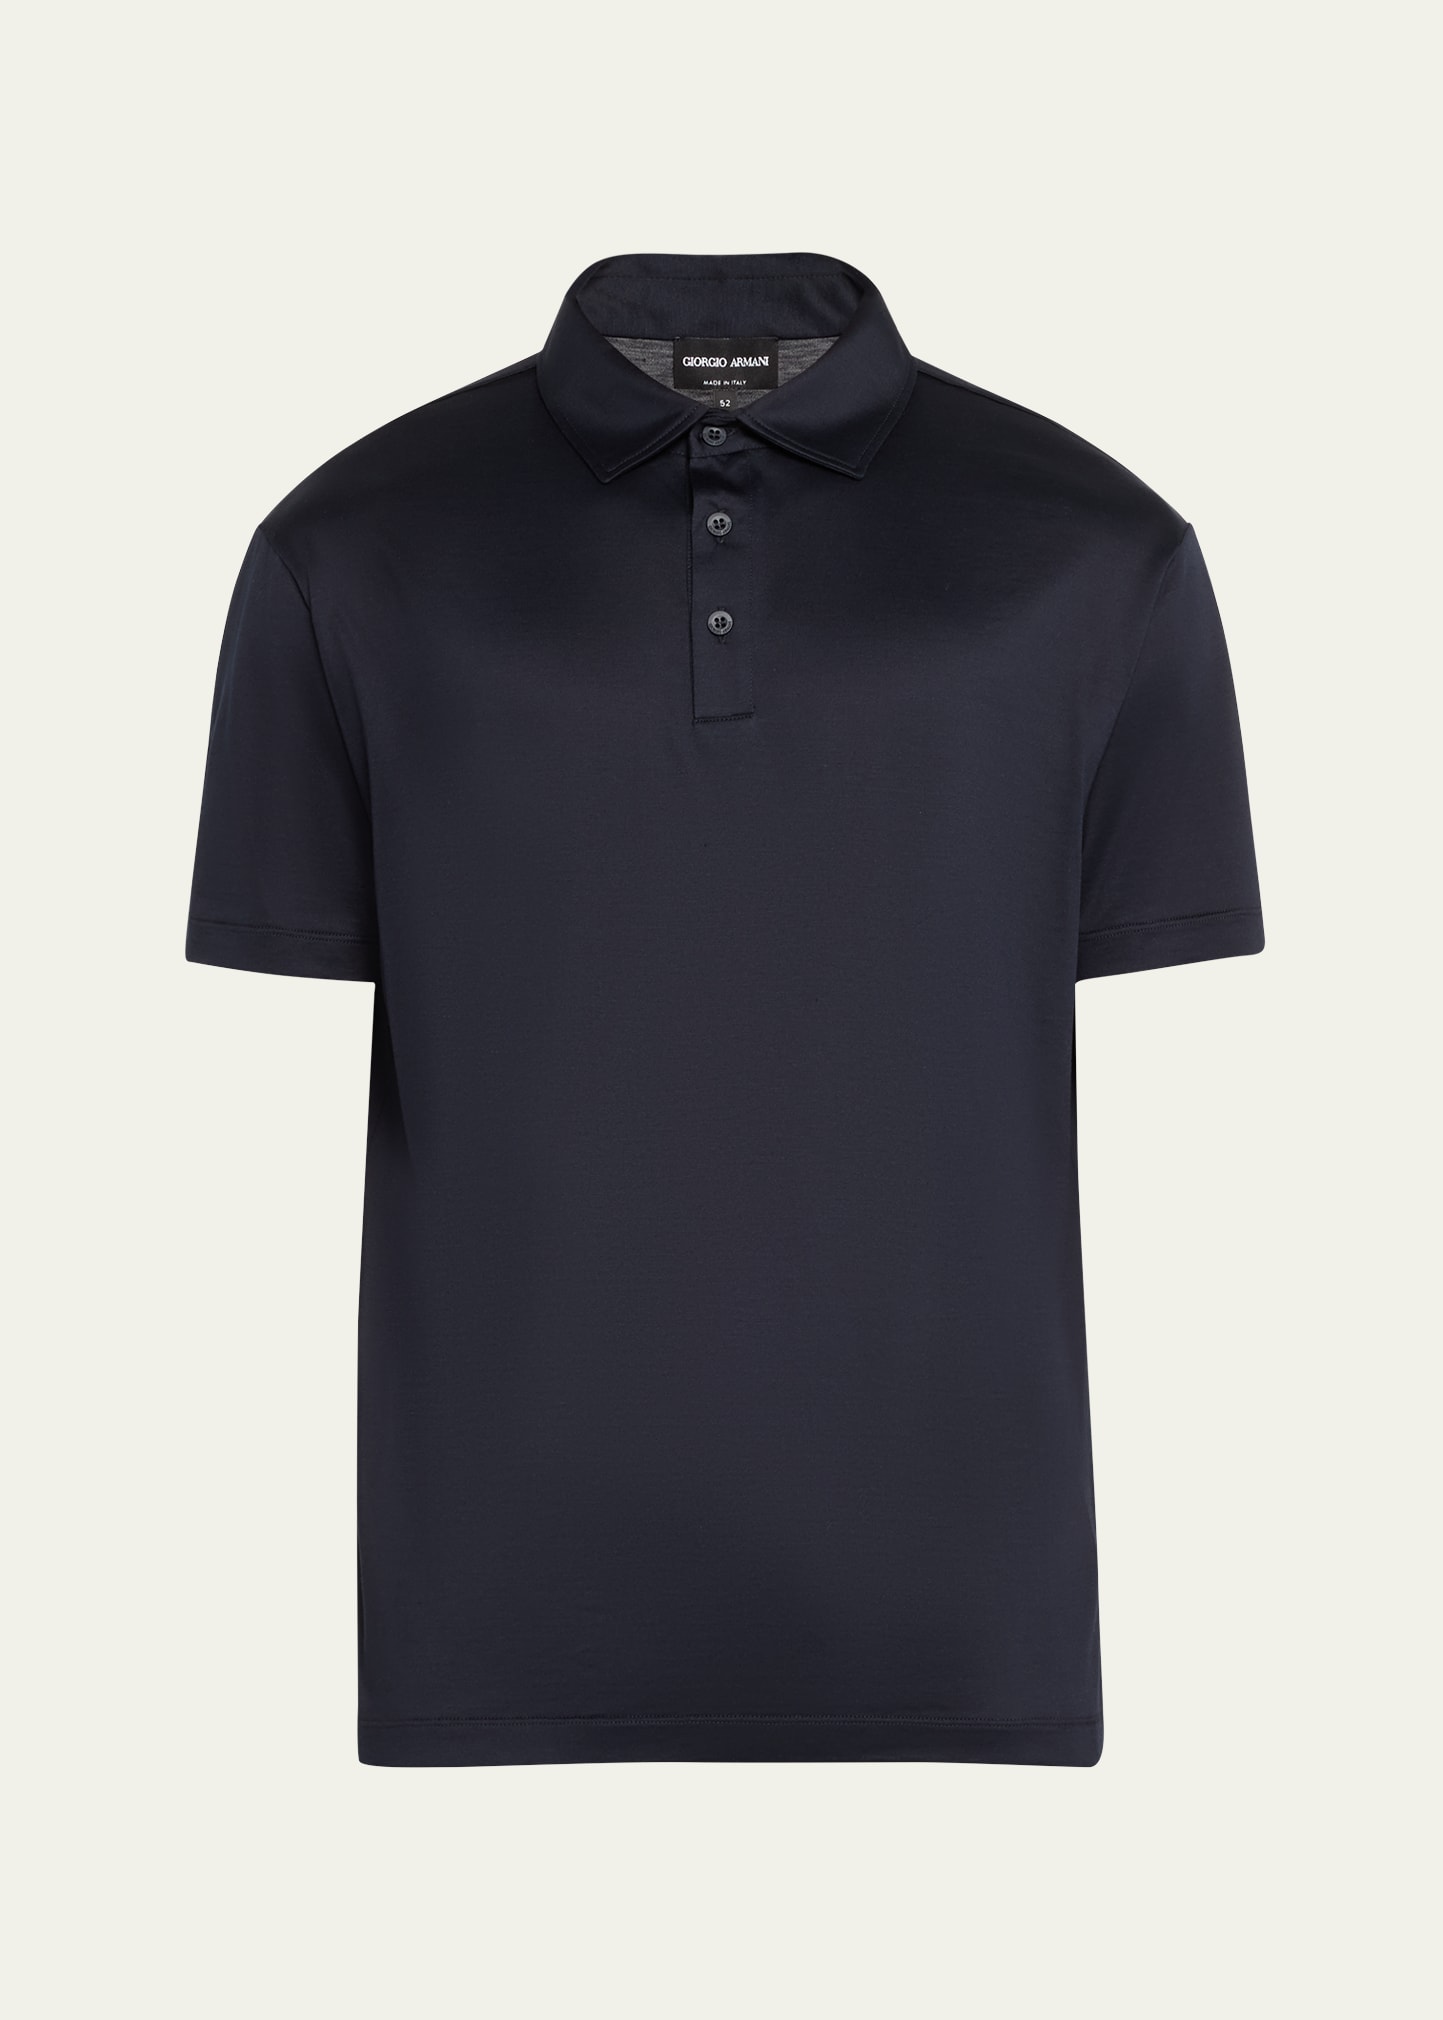 Shop Giorgio Armani Men's Luxe Jersey Polo Shirt In Solid Dark Blue